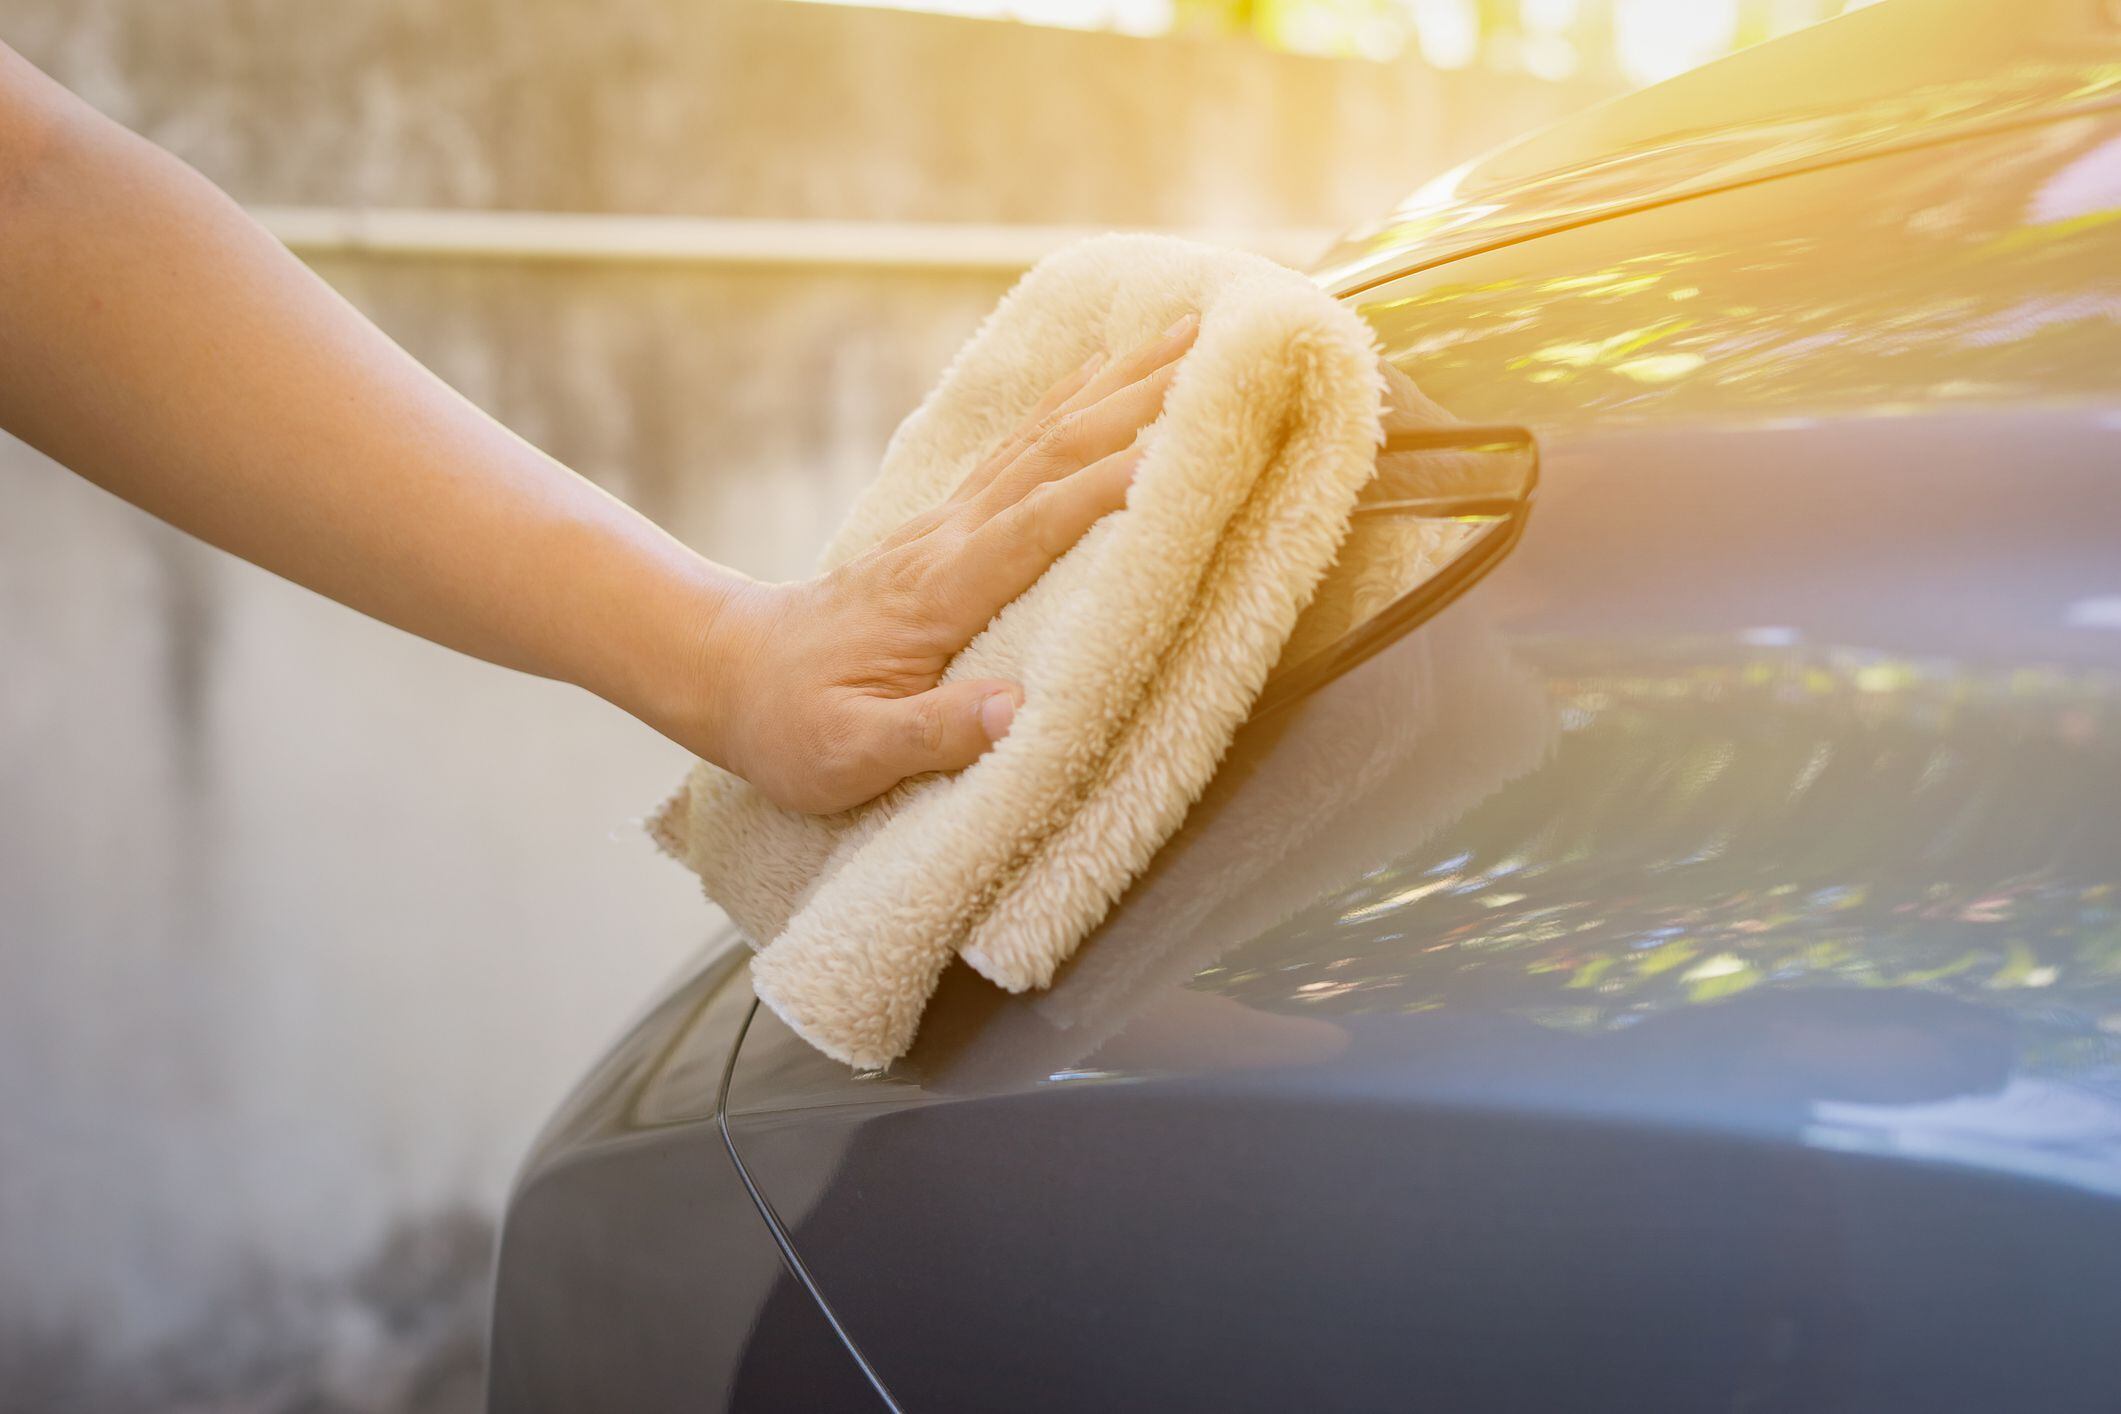 efectivos trucos caseros para limpiar el carro y que luzca como nuevo